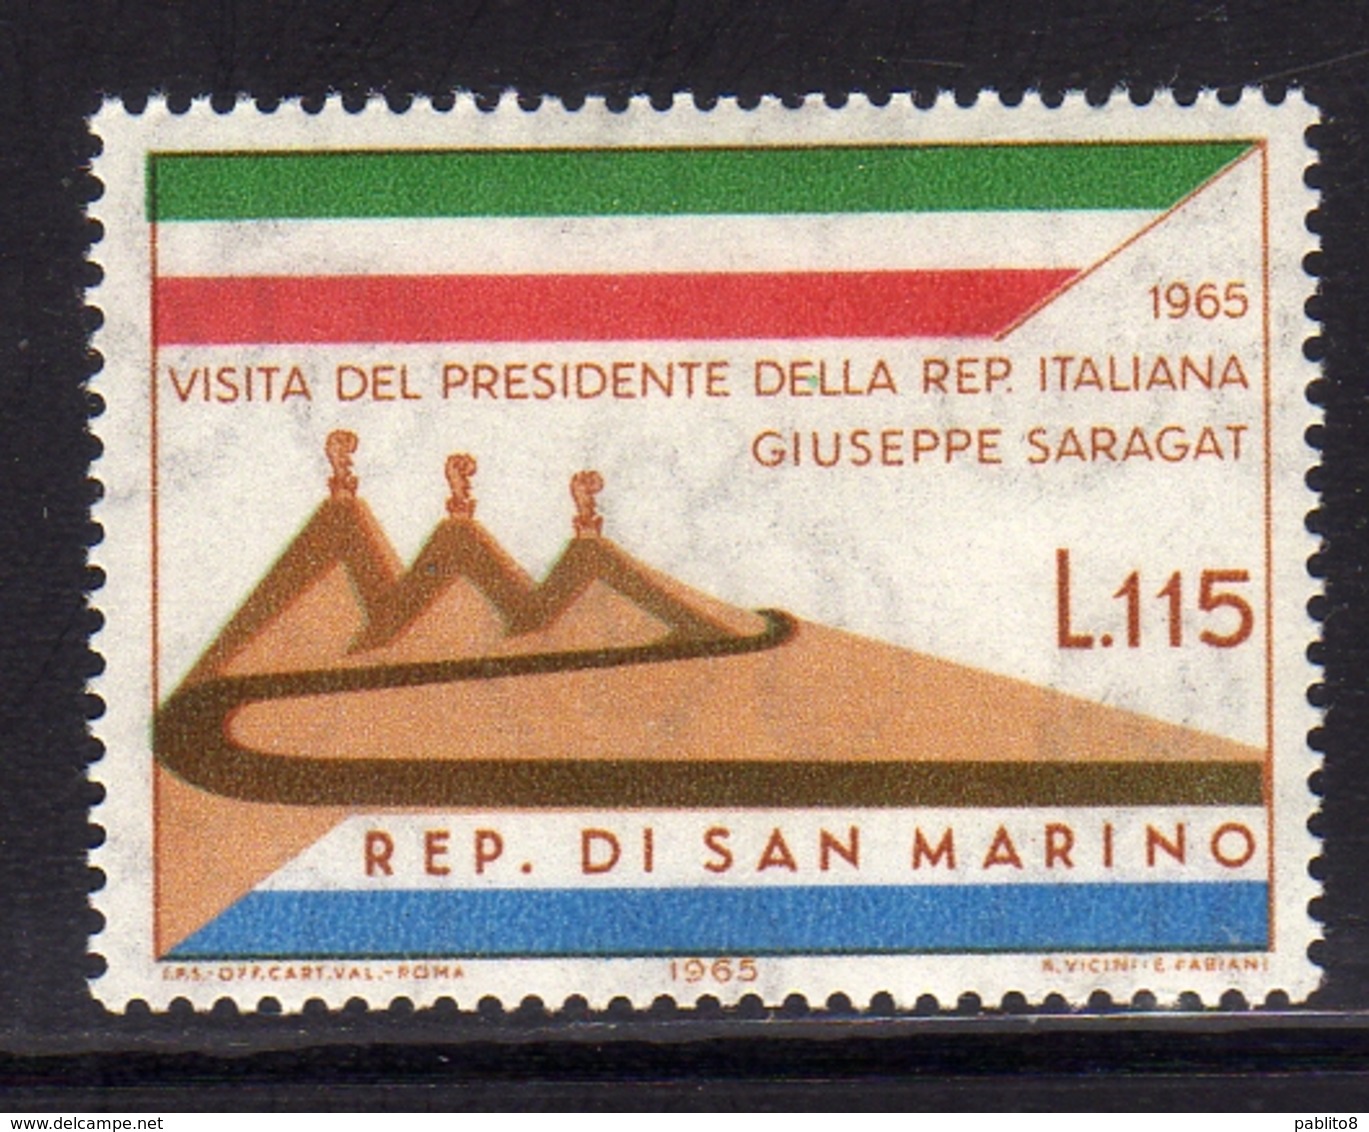 REPUBBLICA DI SAN MARINO 1965 VISITA DEL PRESIDENTE DELLA REPUBBLICA ITALIANA SARAGAT LIRE 115 MNH - Nuovi